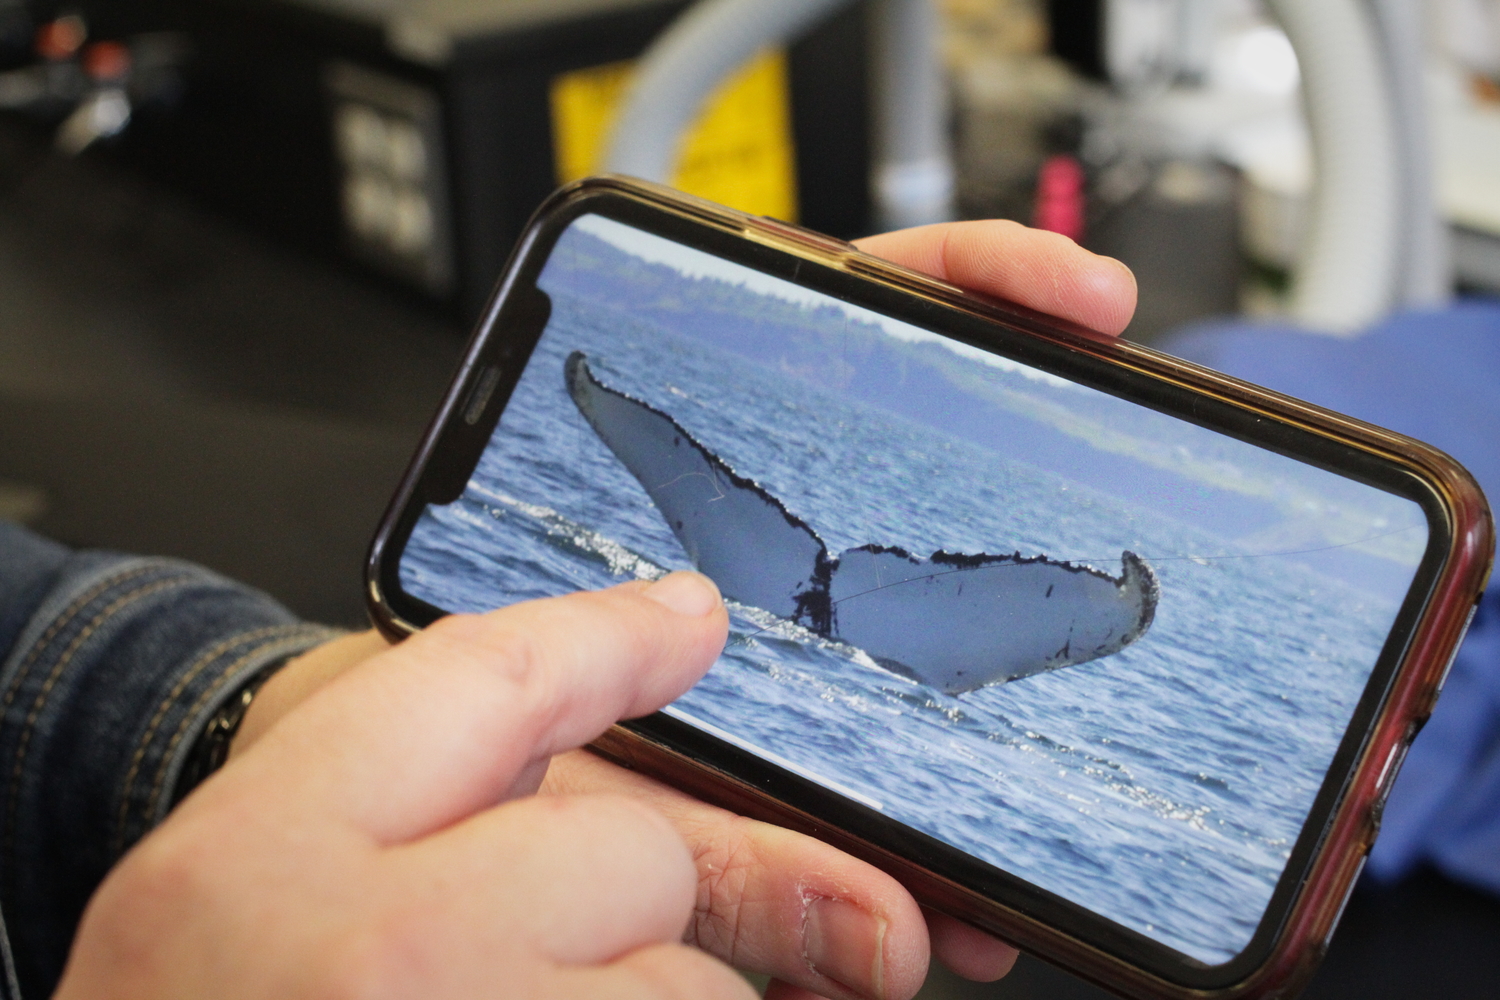 La queue d’une baleine, avec des marques distinctives. Lyne précise que l’on reconnaît chaque baleine par ces marques, comme pour des empreintes digitales.